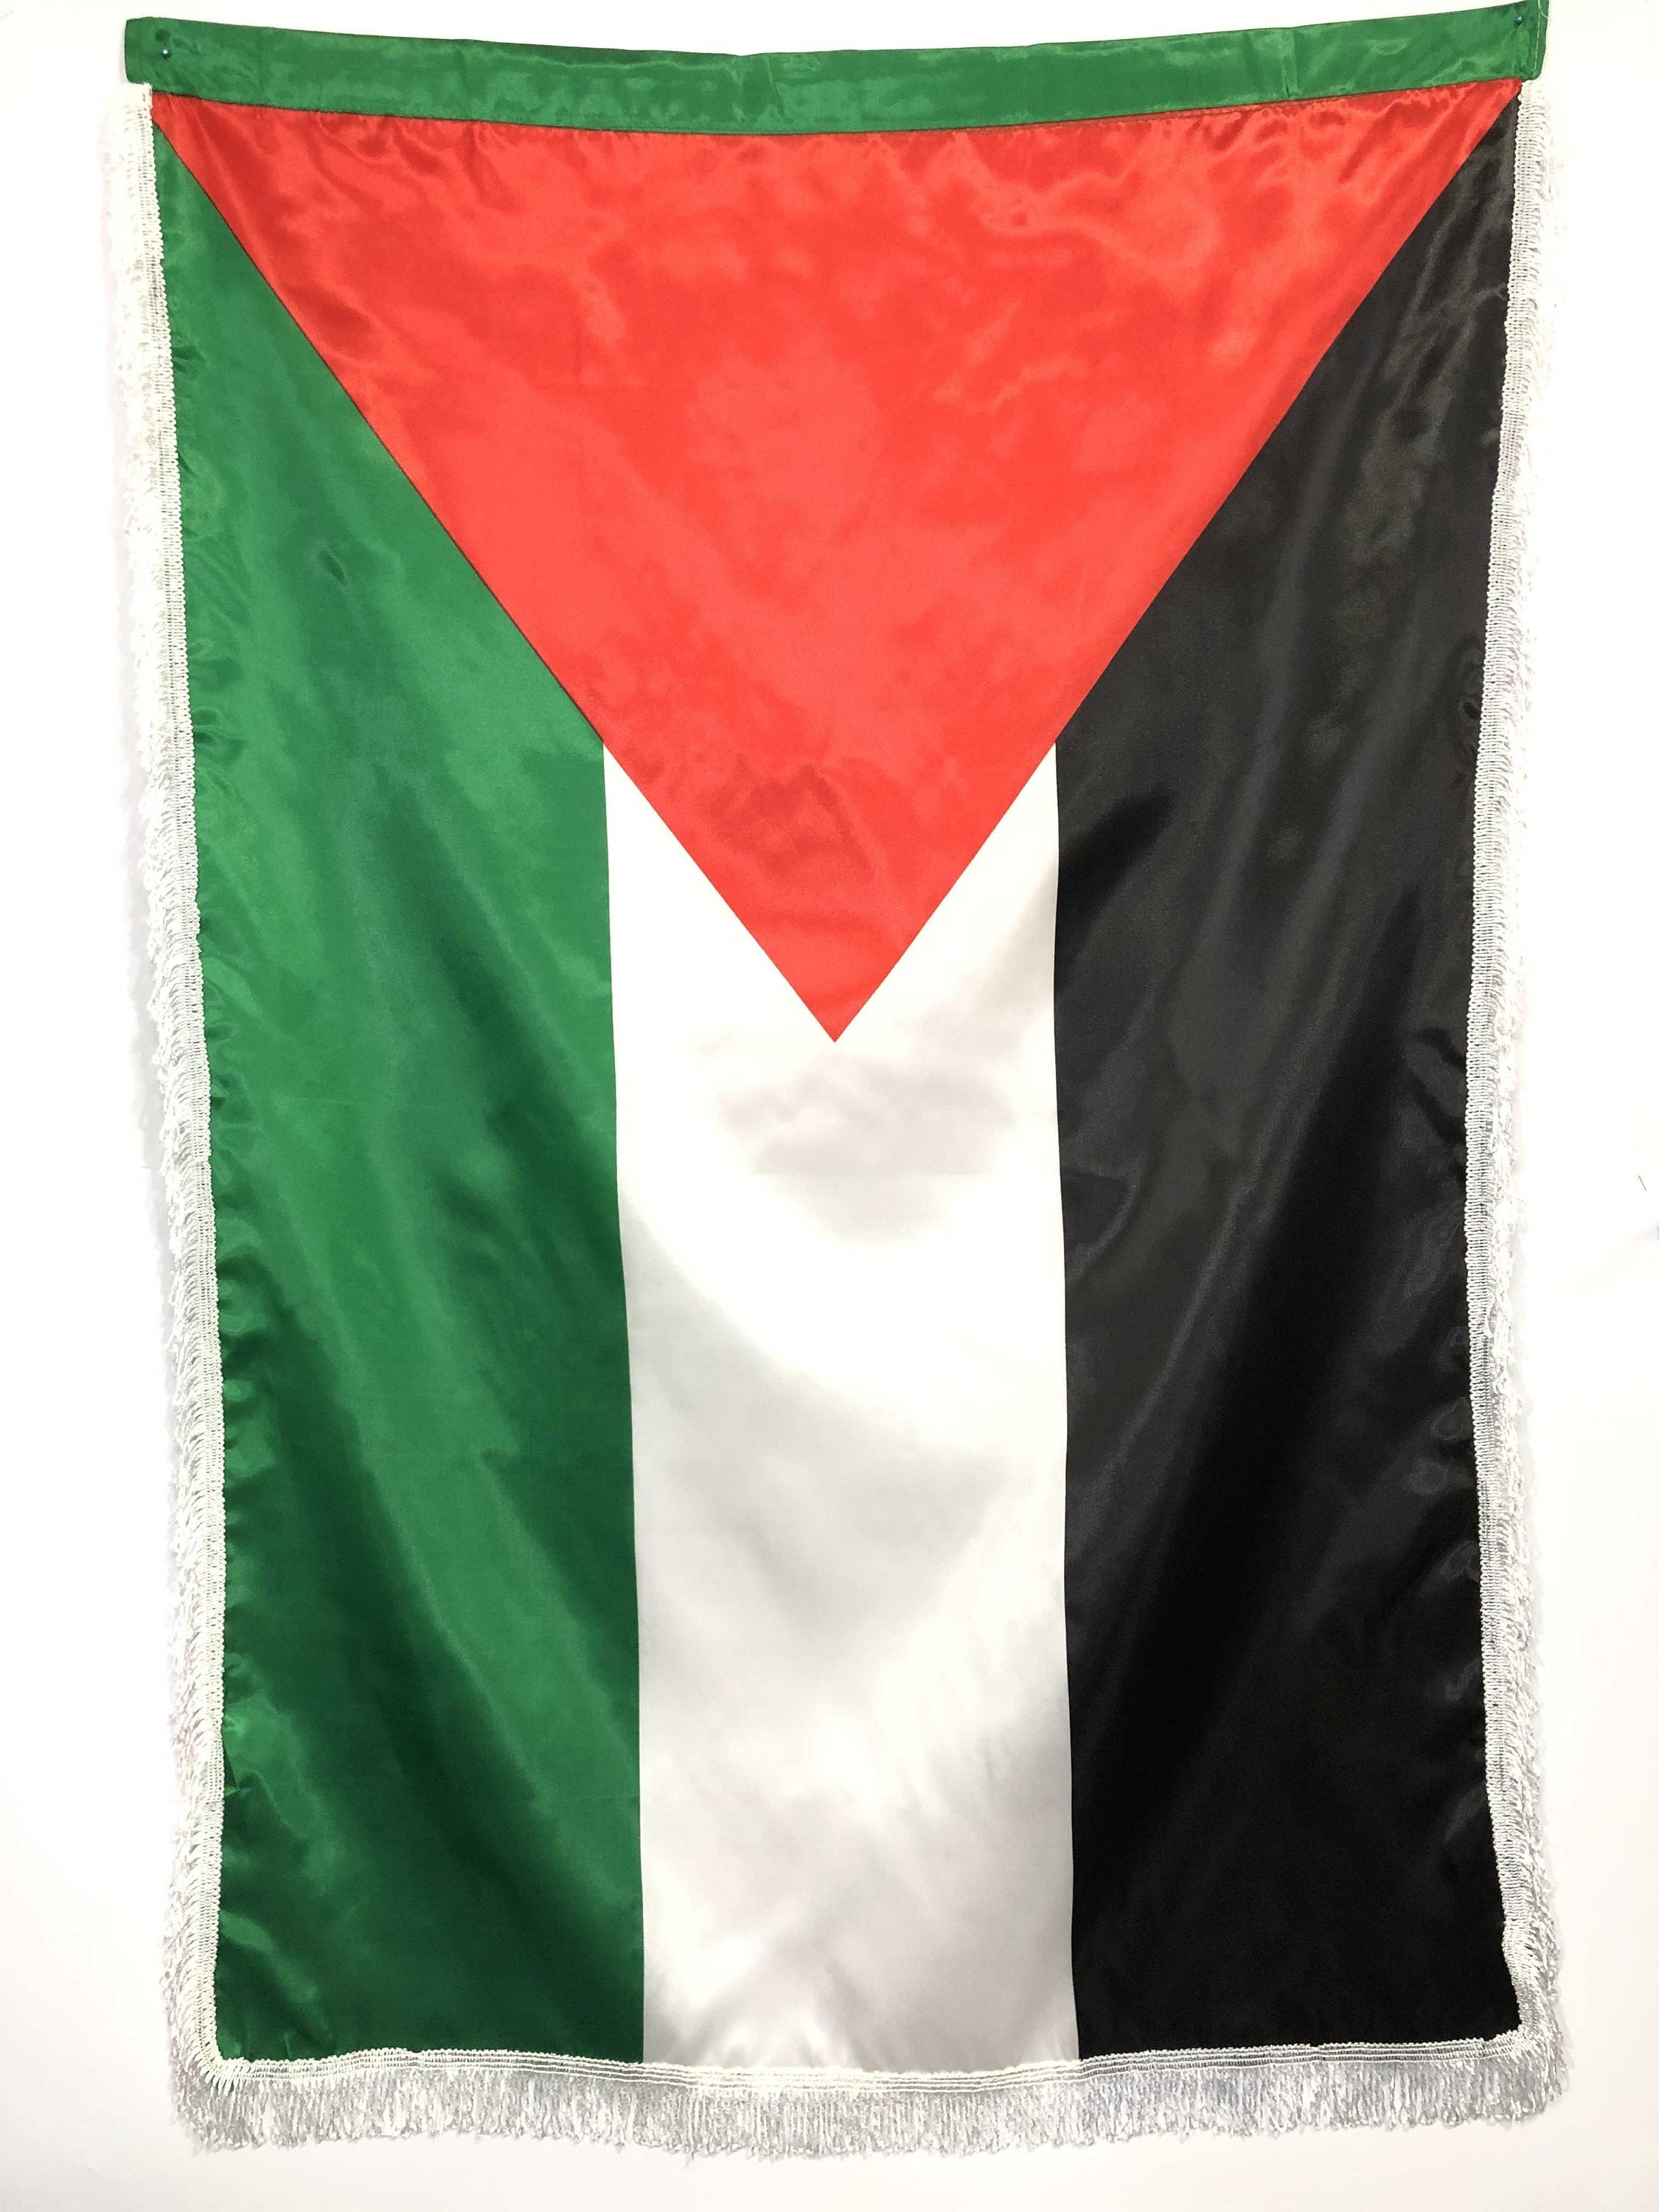 Drapeau Palestine sur Hampe à agiter - 5 tailles disponibles